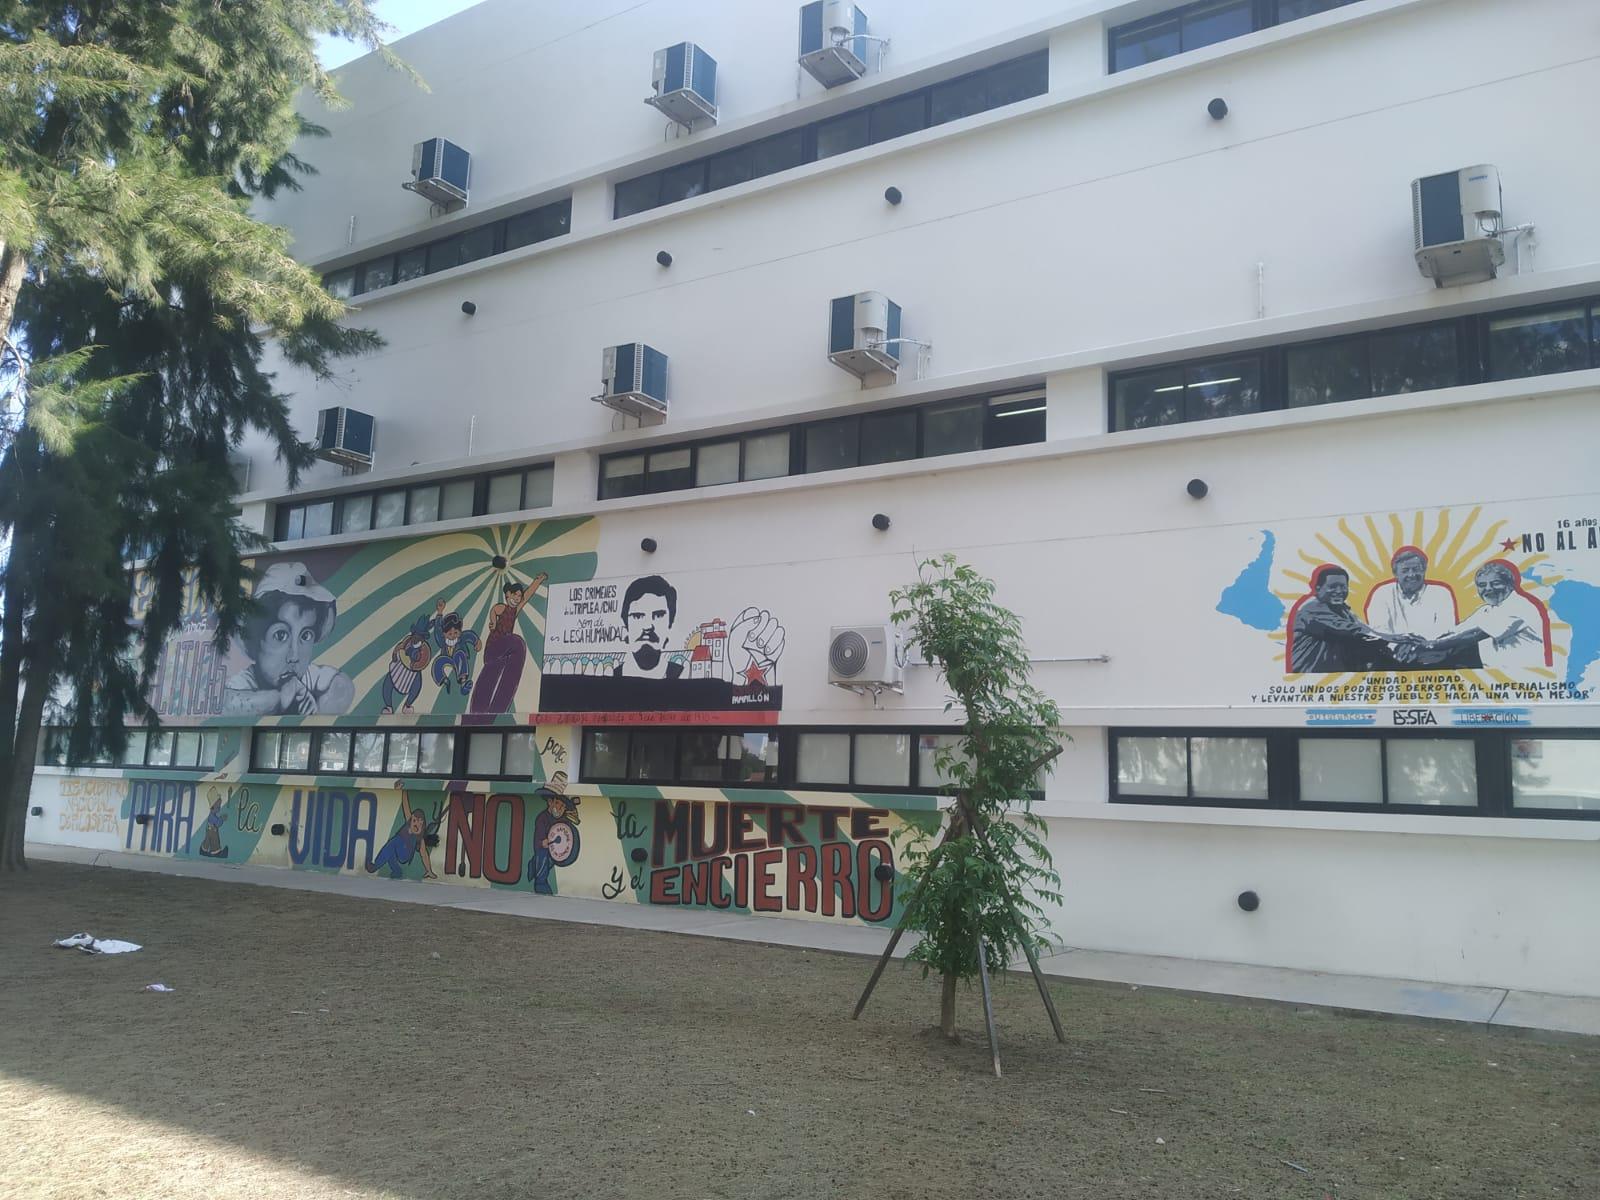 Murales de la Facultad de Humanidades y
Ciencias de la Educación